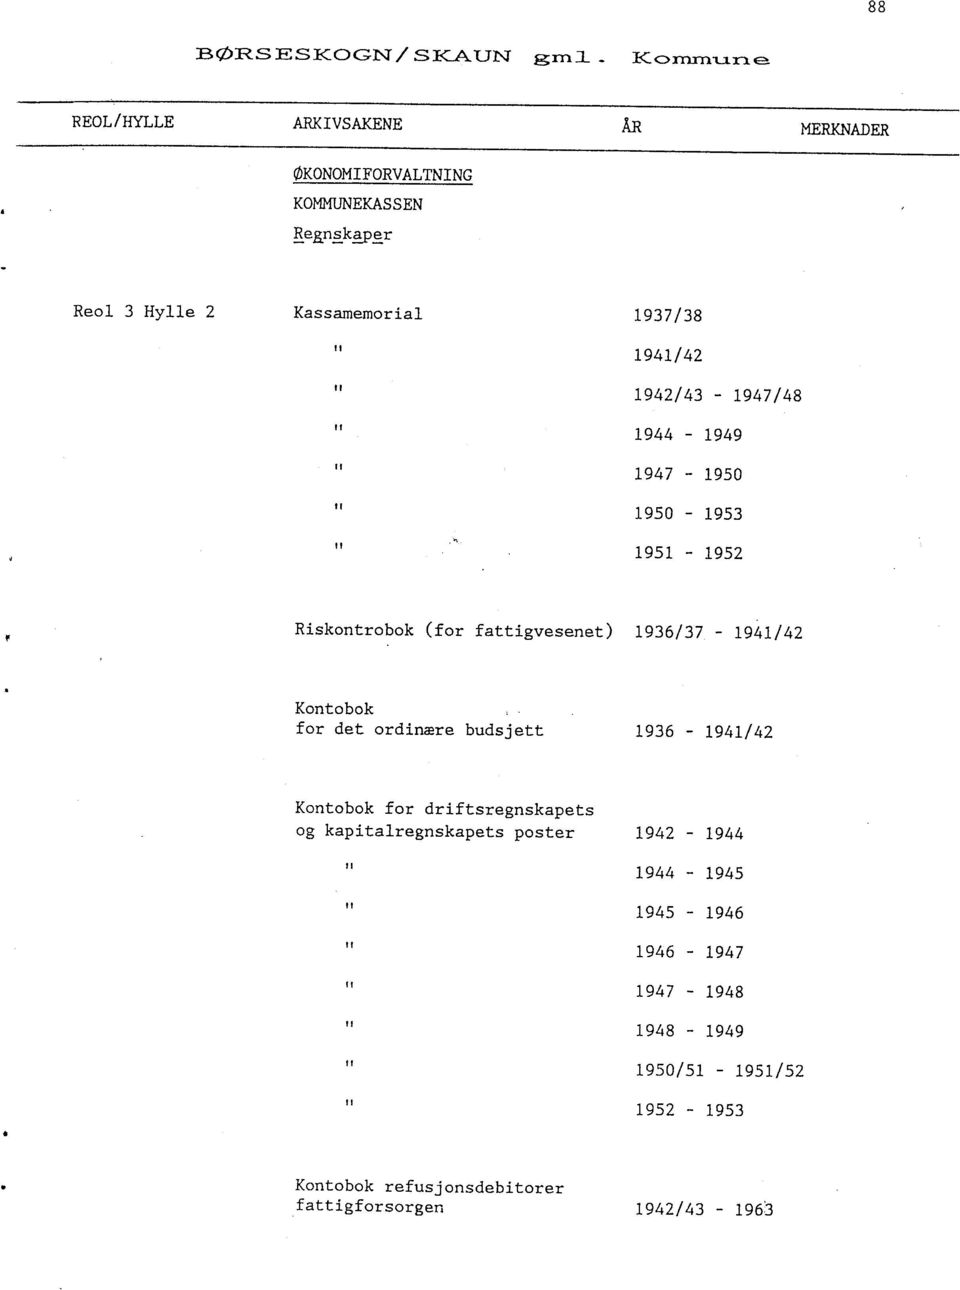 1936/37-1941/42 Kontobok for det ordinære budsjett 1936-1941/42 Kontobok for driftsregnskapets og kapitalregnskapets poster